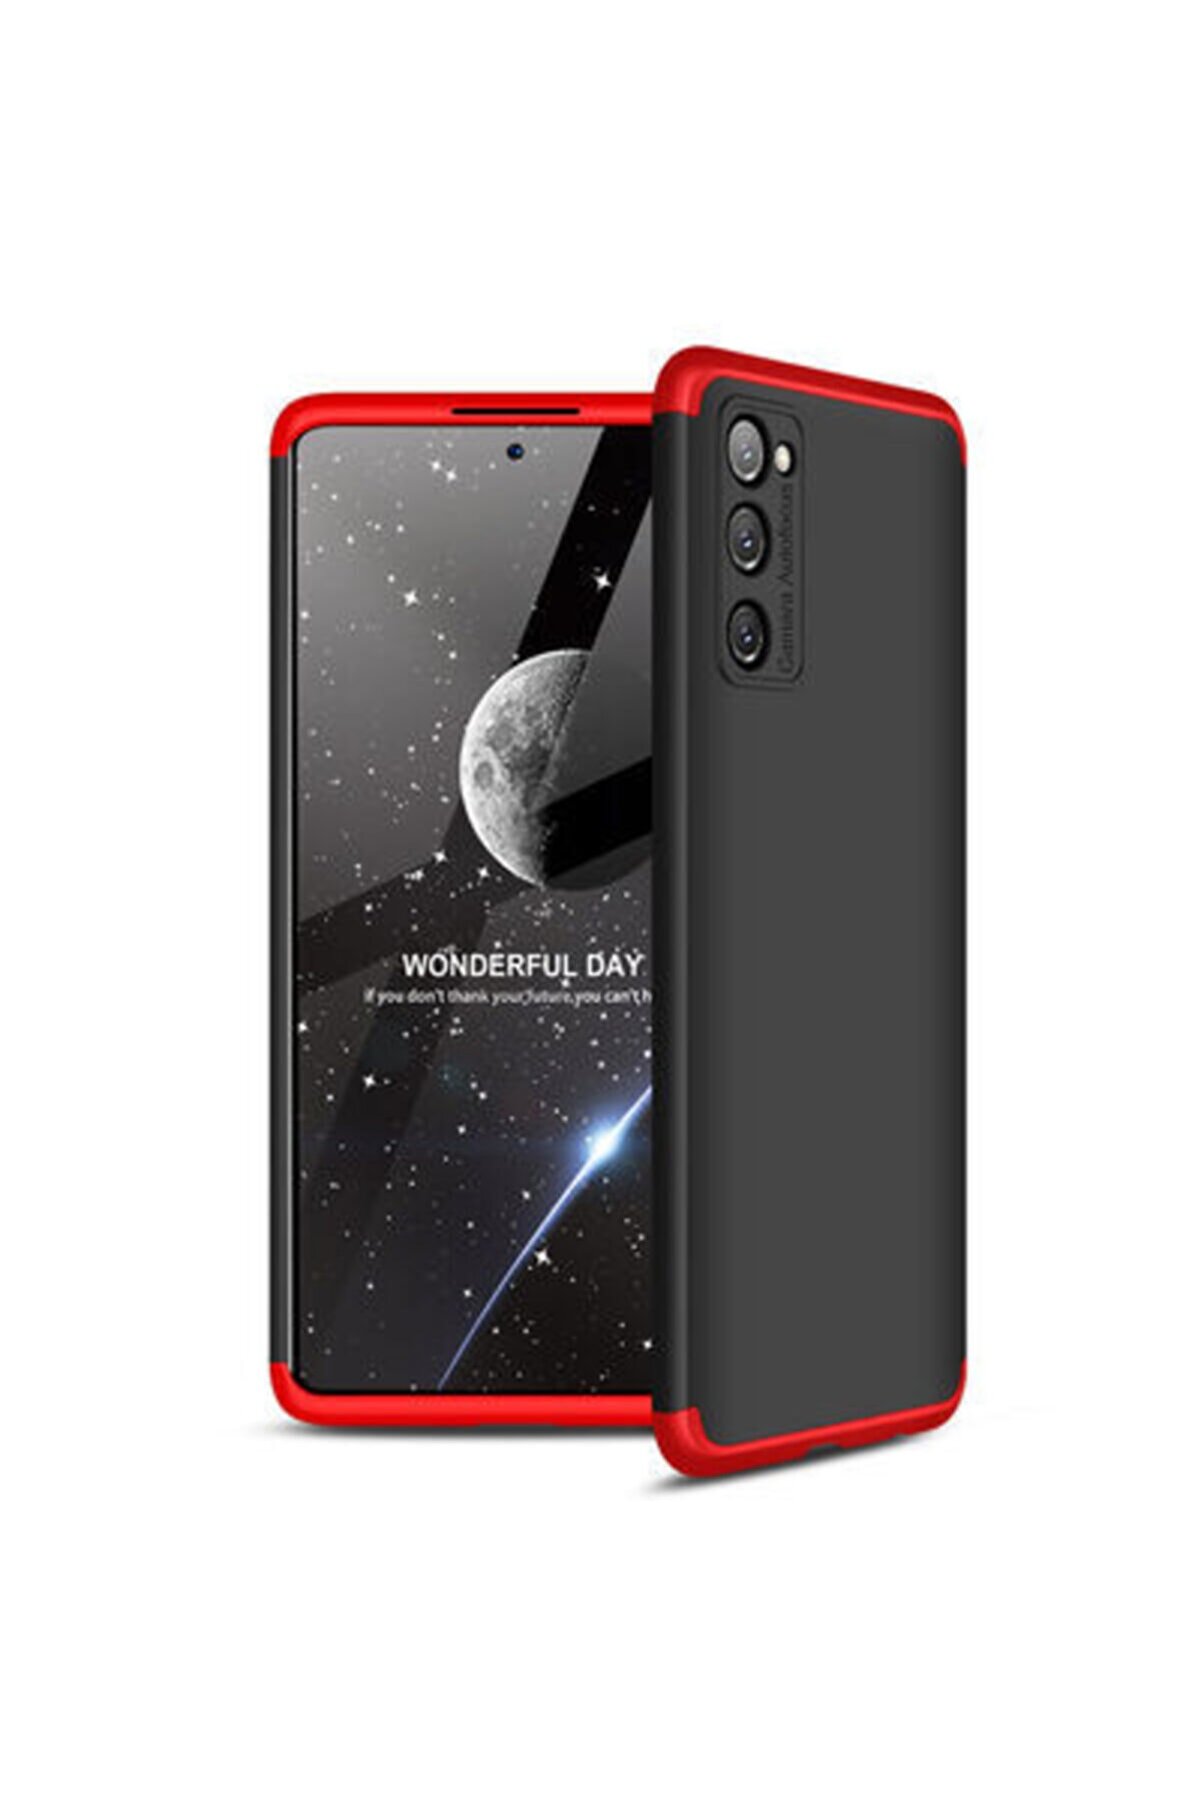 Fibaks Galaxy S20 Fe Kılıf 3 Parçalı 360 Korumalı Premium Sert Kapak